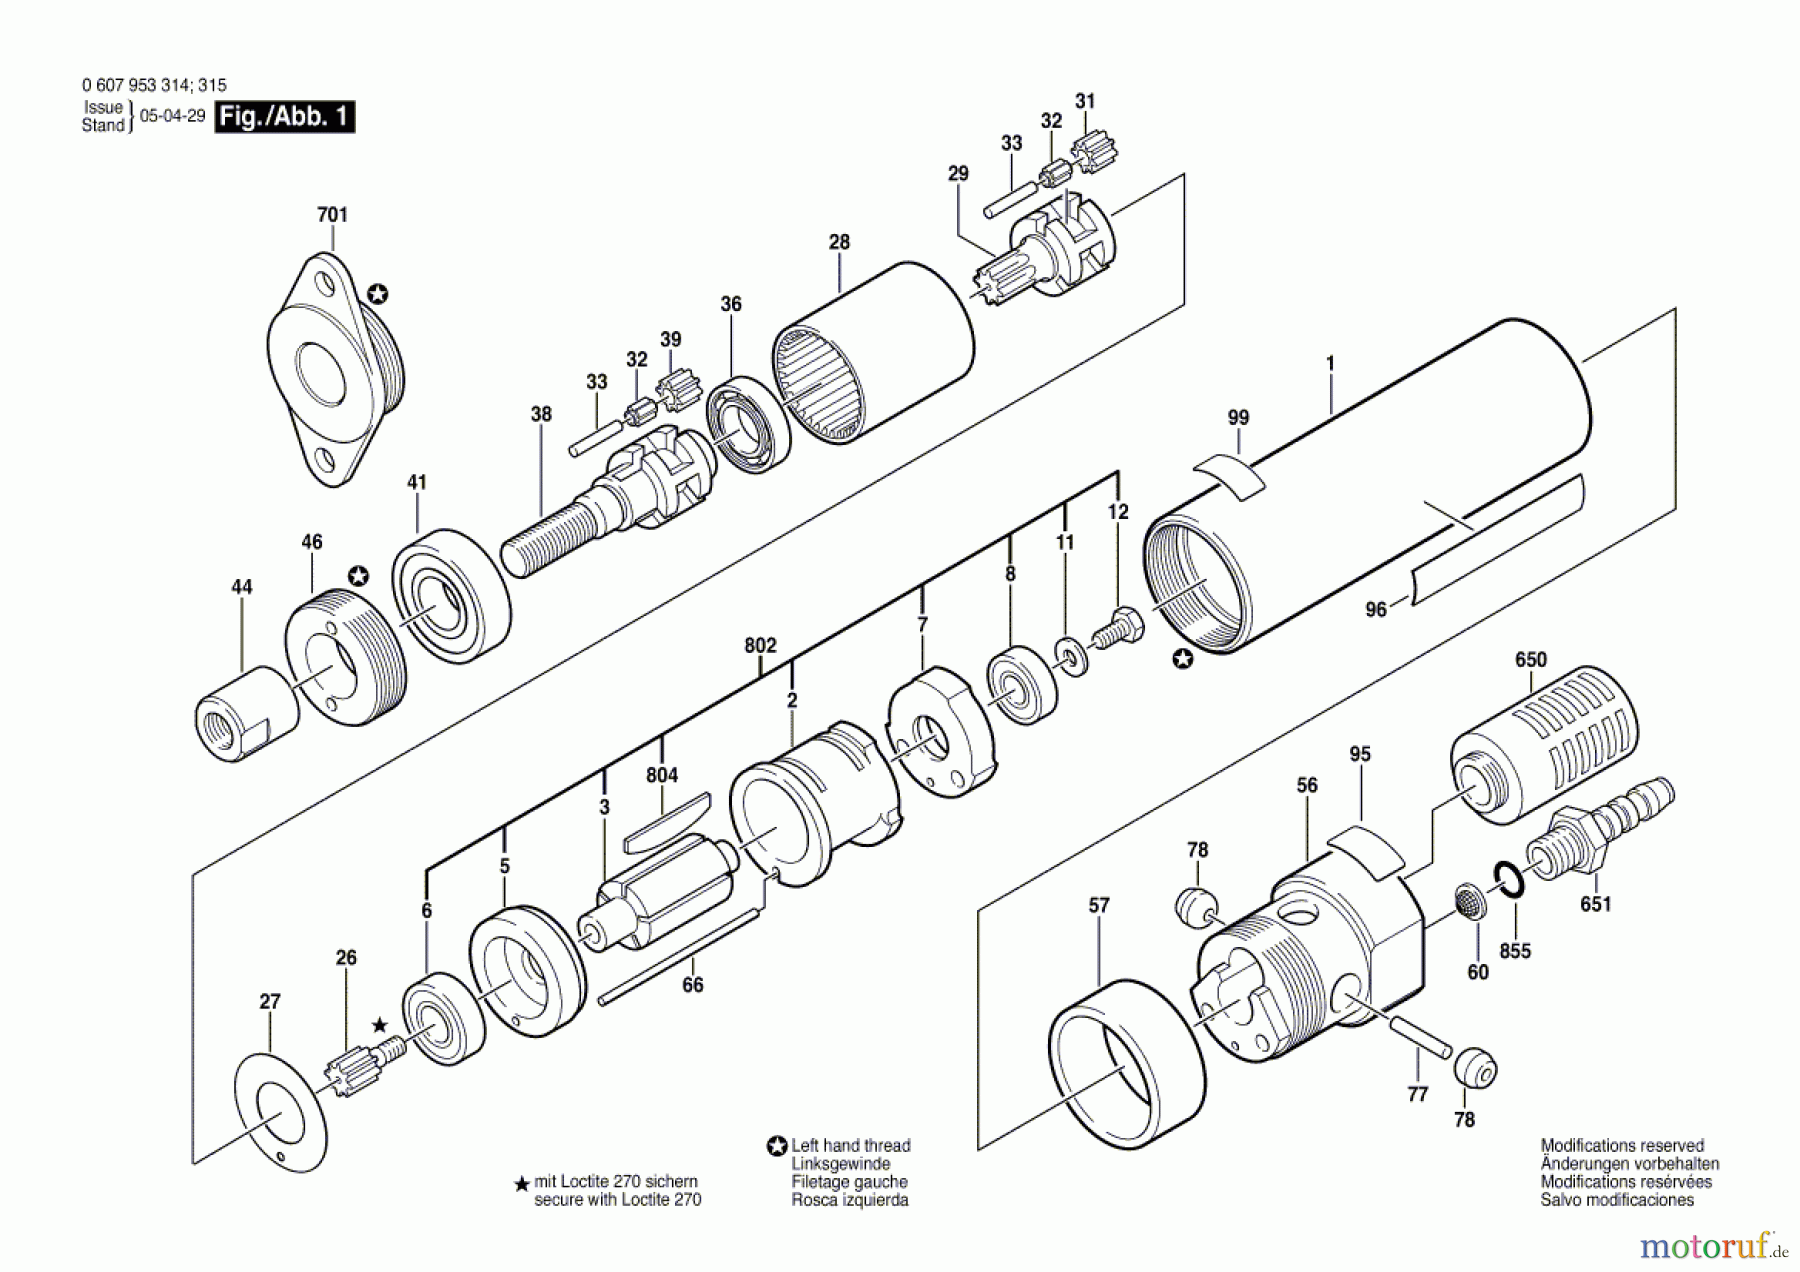  Bosch Werkzeug Einbaumotor 180 WATT-SERIE Seite 1